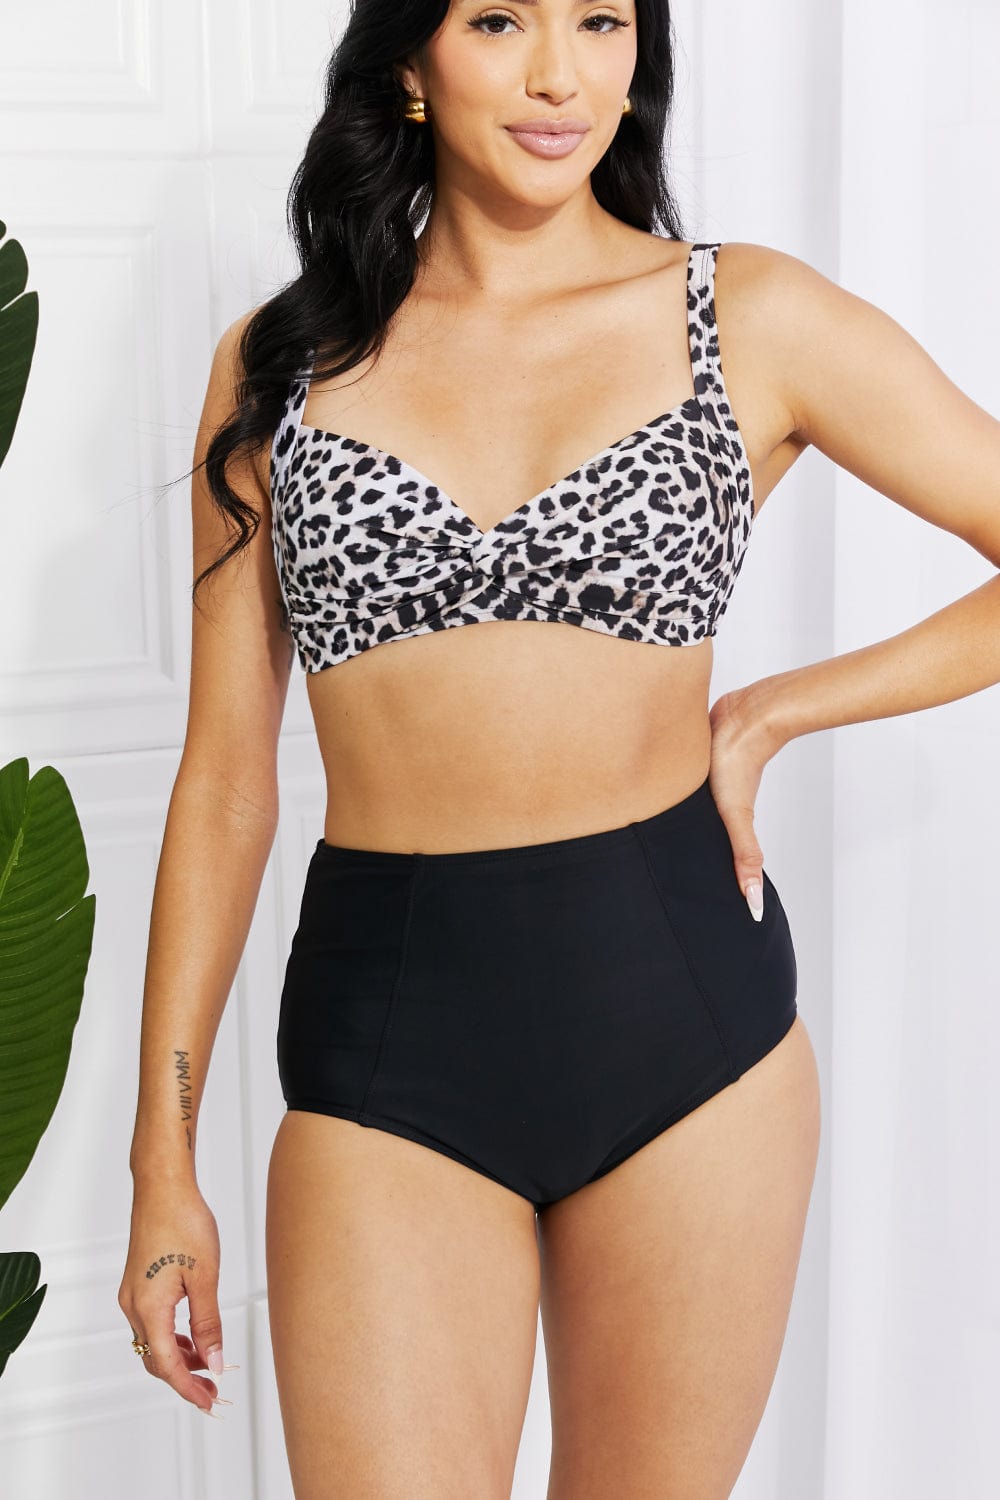 Take A Dip Twist High-Rise Bikini in Leopard - Body By J'ne